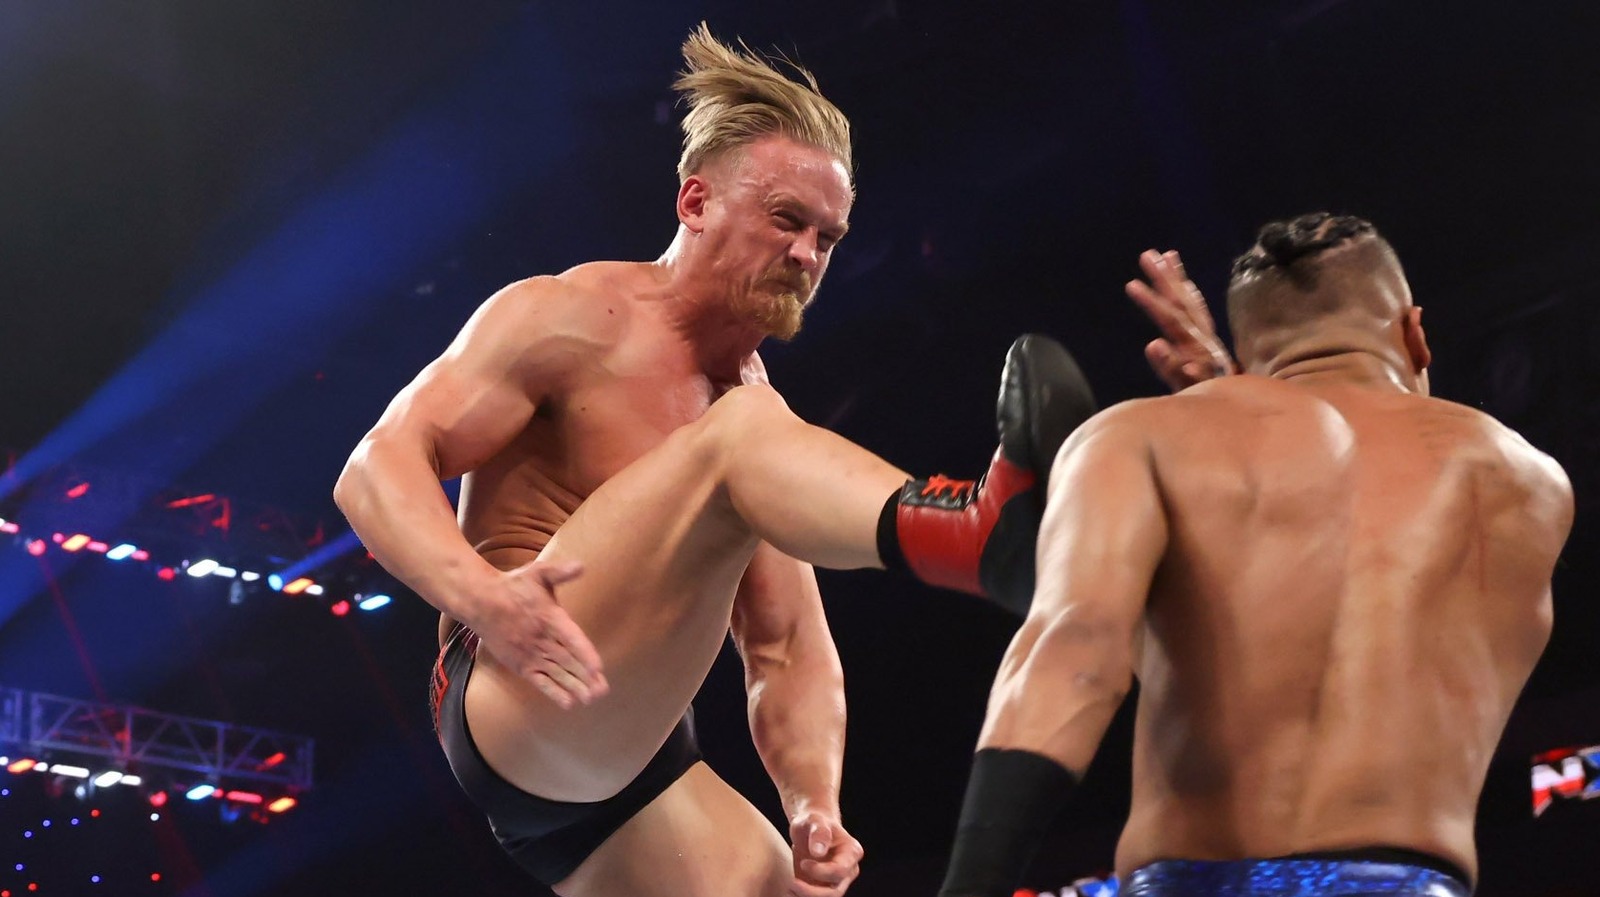 La sombría advertencia del campeón de NXT Ilja Dragunov para Carmelo Hayes antes de los estragos de Halloween